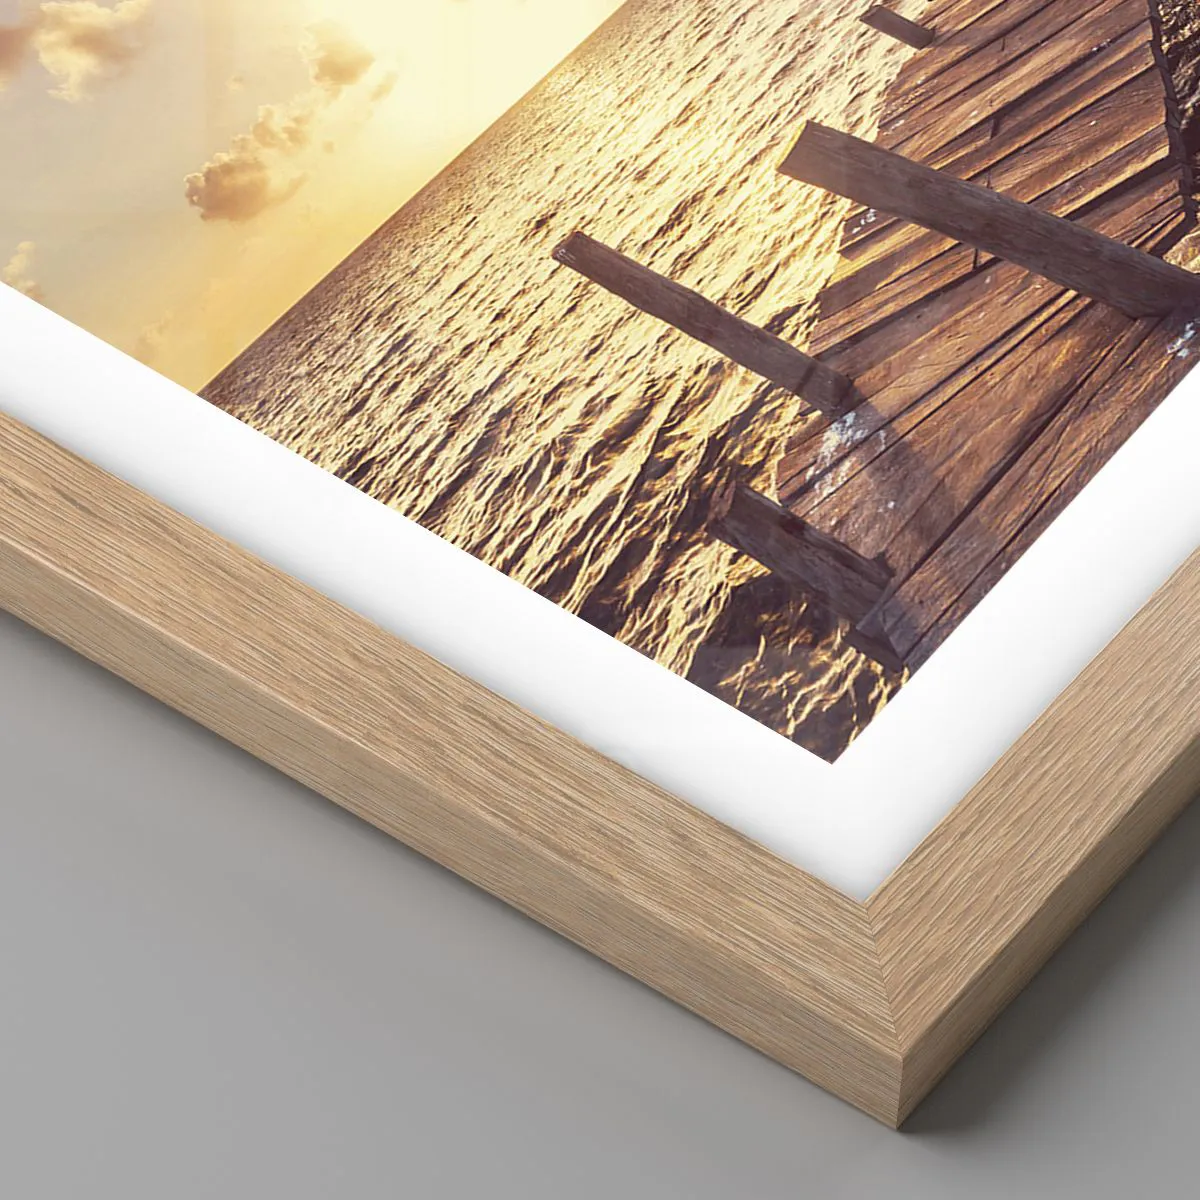 Cornice colore bianca opaca in legno per foto,stampe,poster